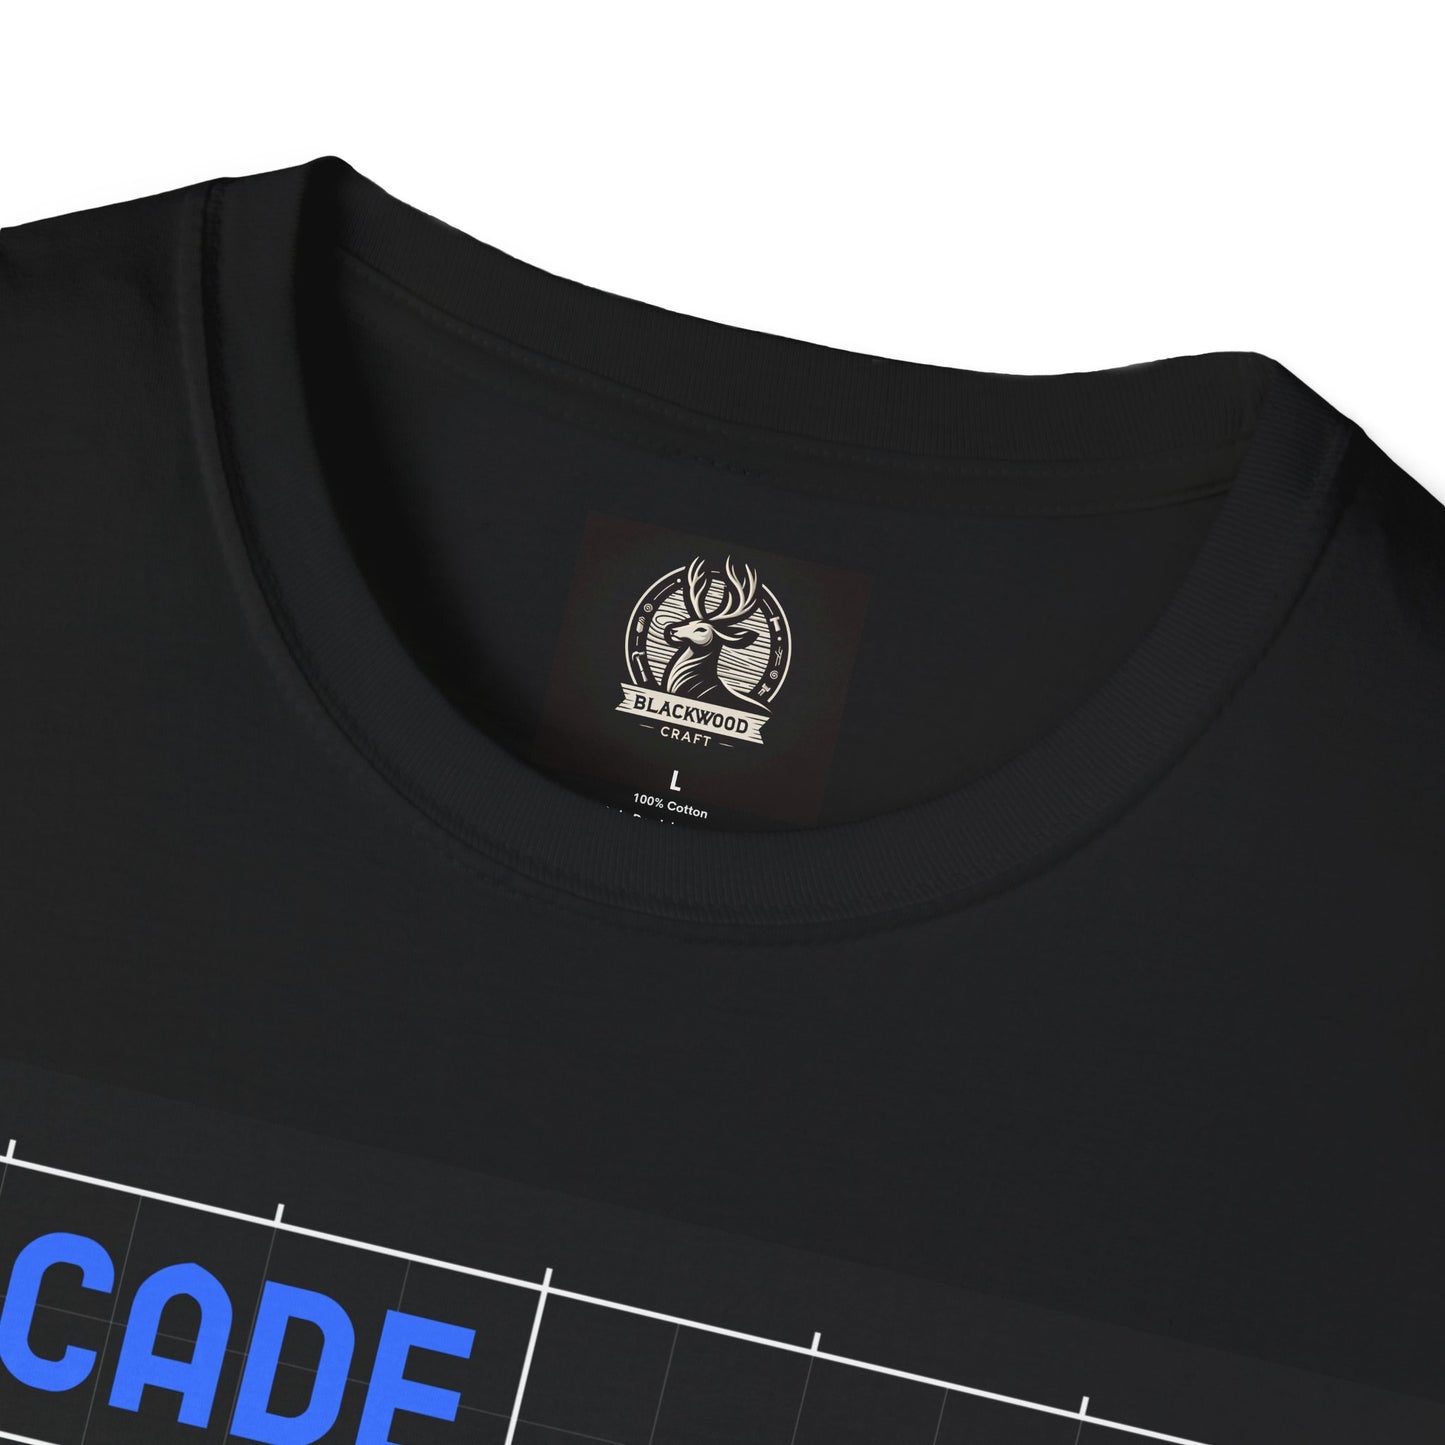 Arcade Blueprint Technology Gaming Awesome Unisex Softstyle T-Shirt